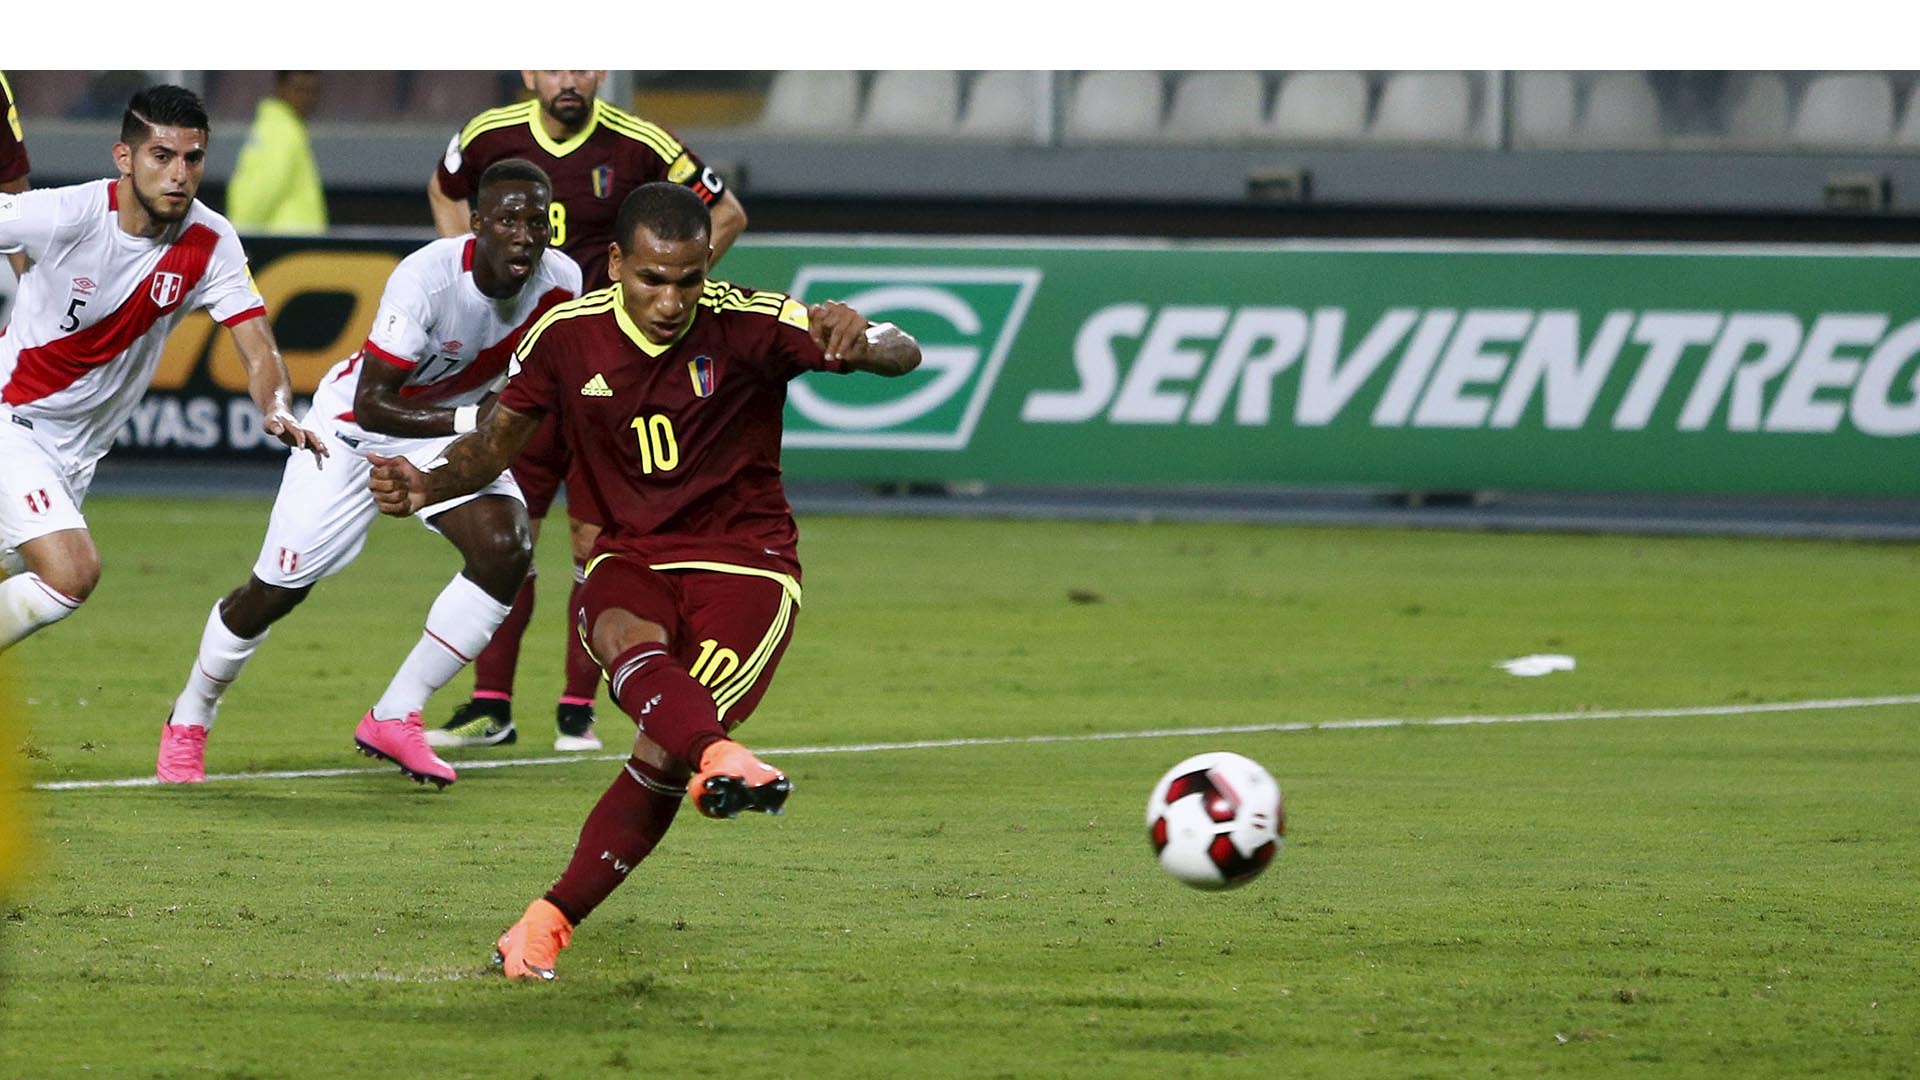 Con goles de Rómulo Otero y Mikel Villanueva el cuadro criollo saca un empate agridulce en su camino hacia el Mundial Rusia 2018